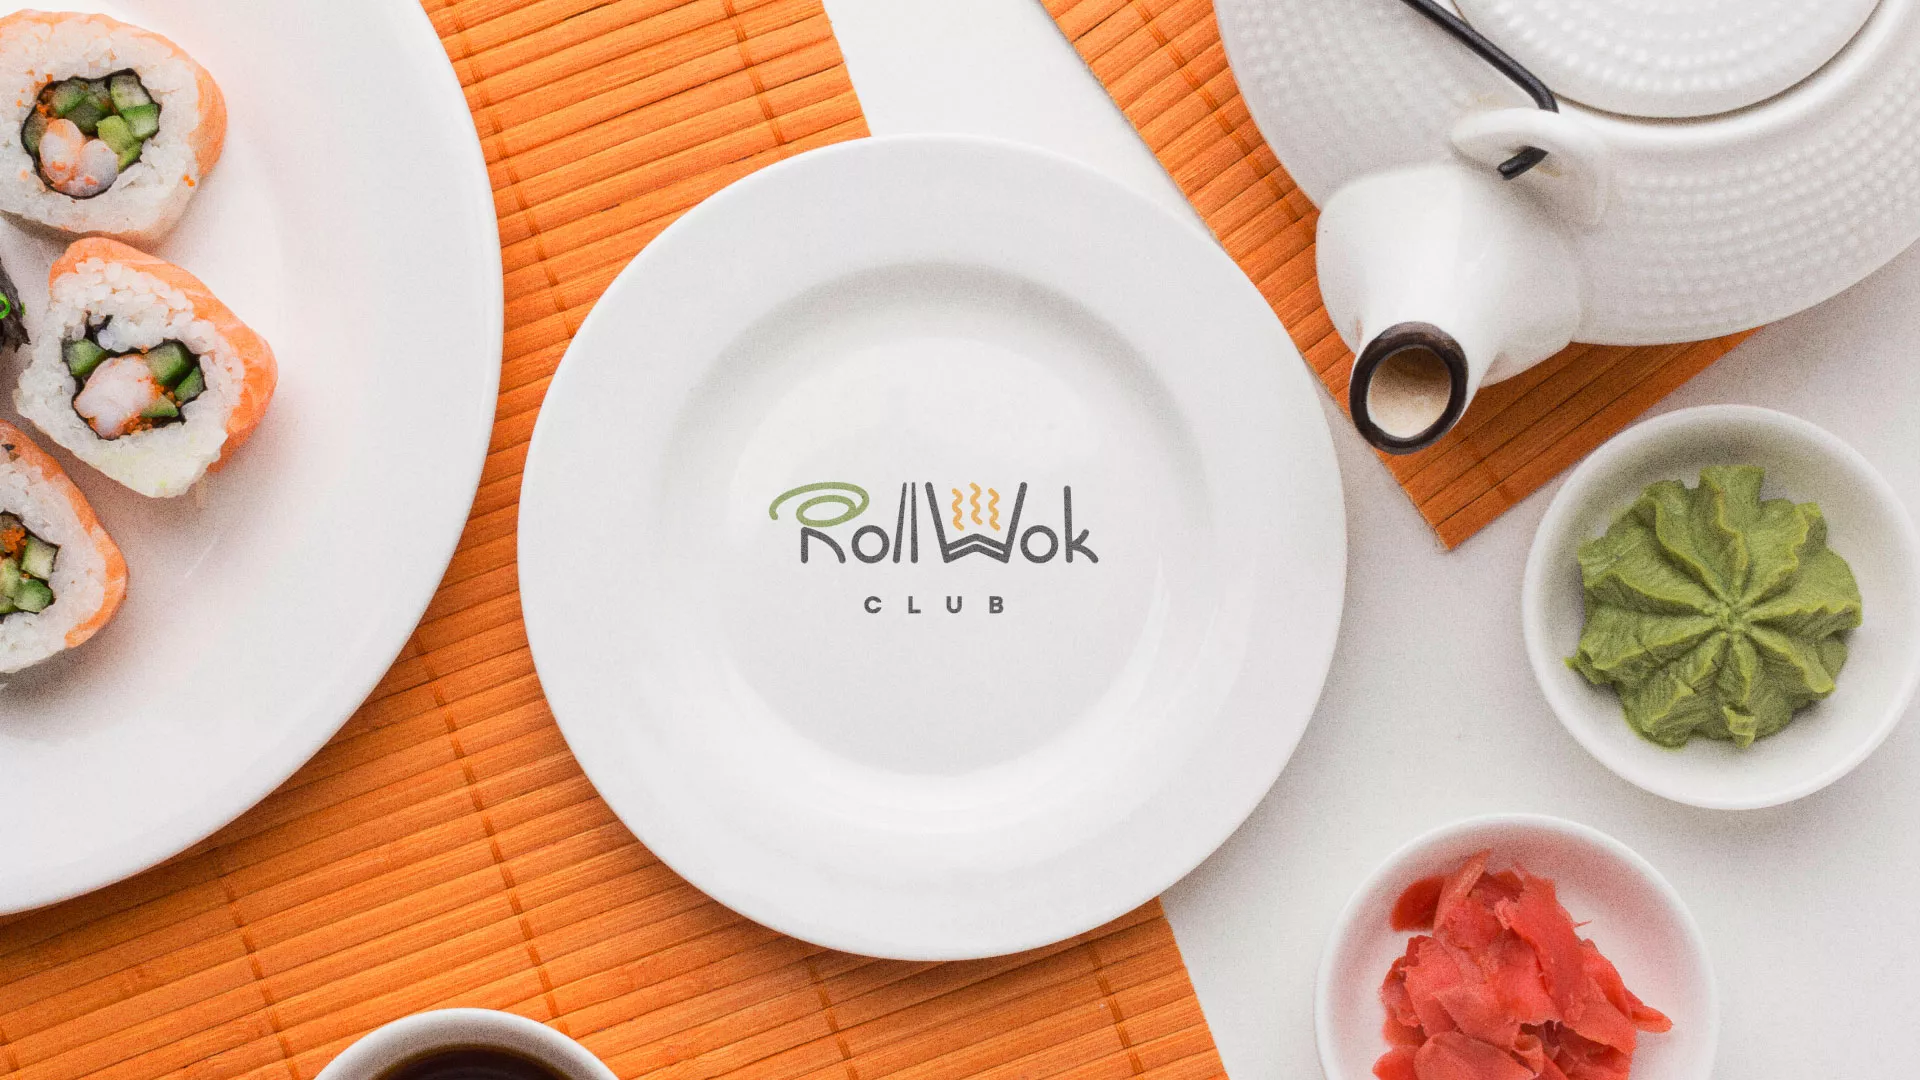 Разработка логотипа и фирменного стиля суши-бара «Roll Wok Club» в Кириллове